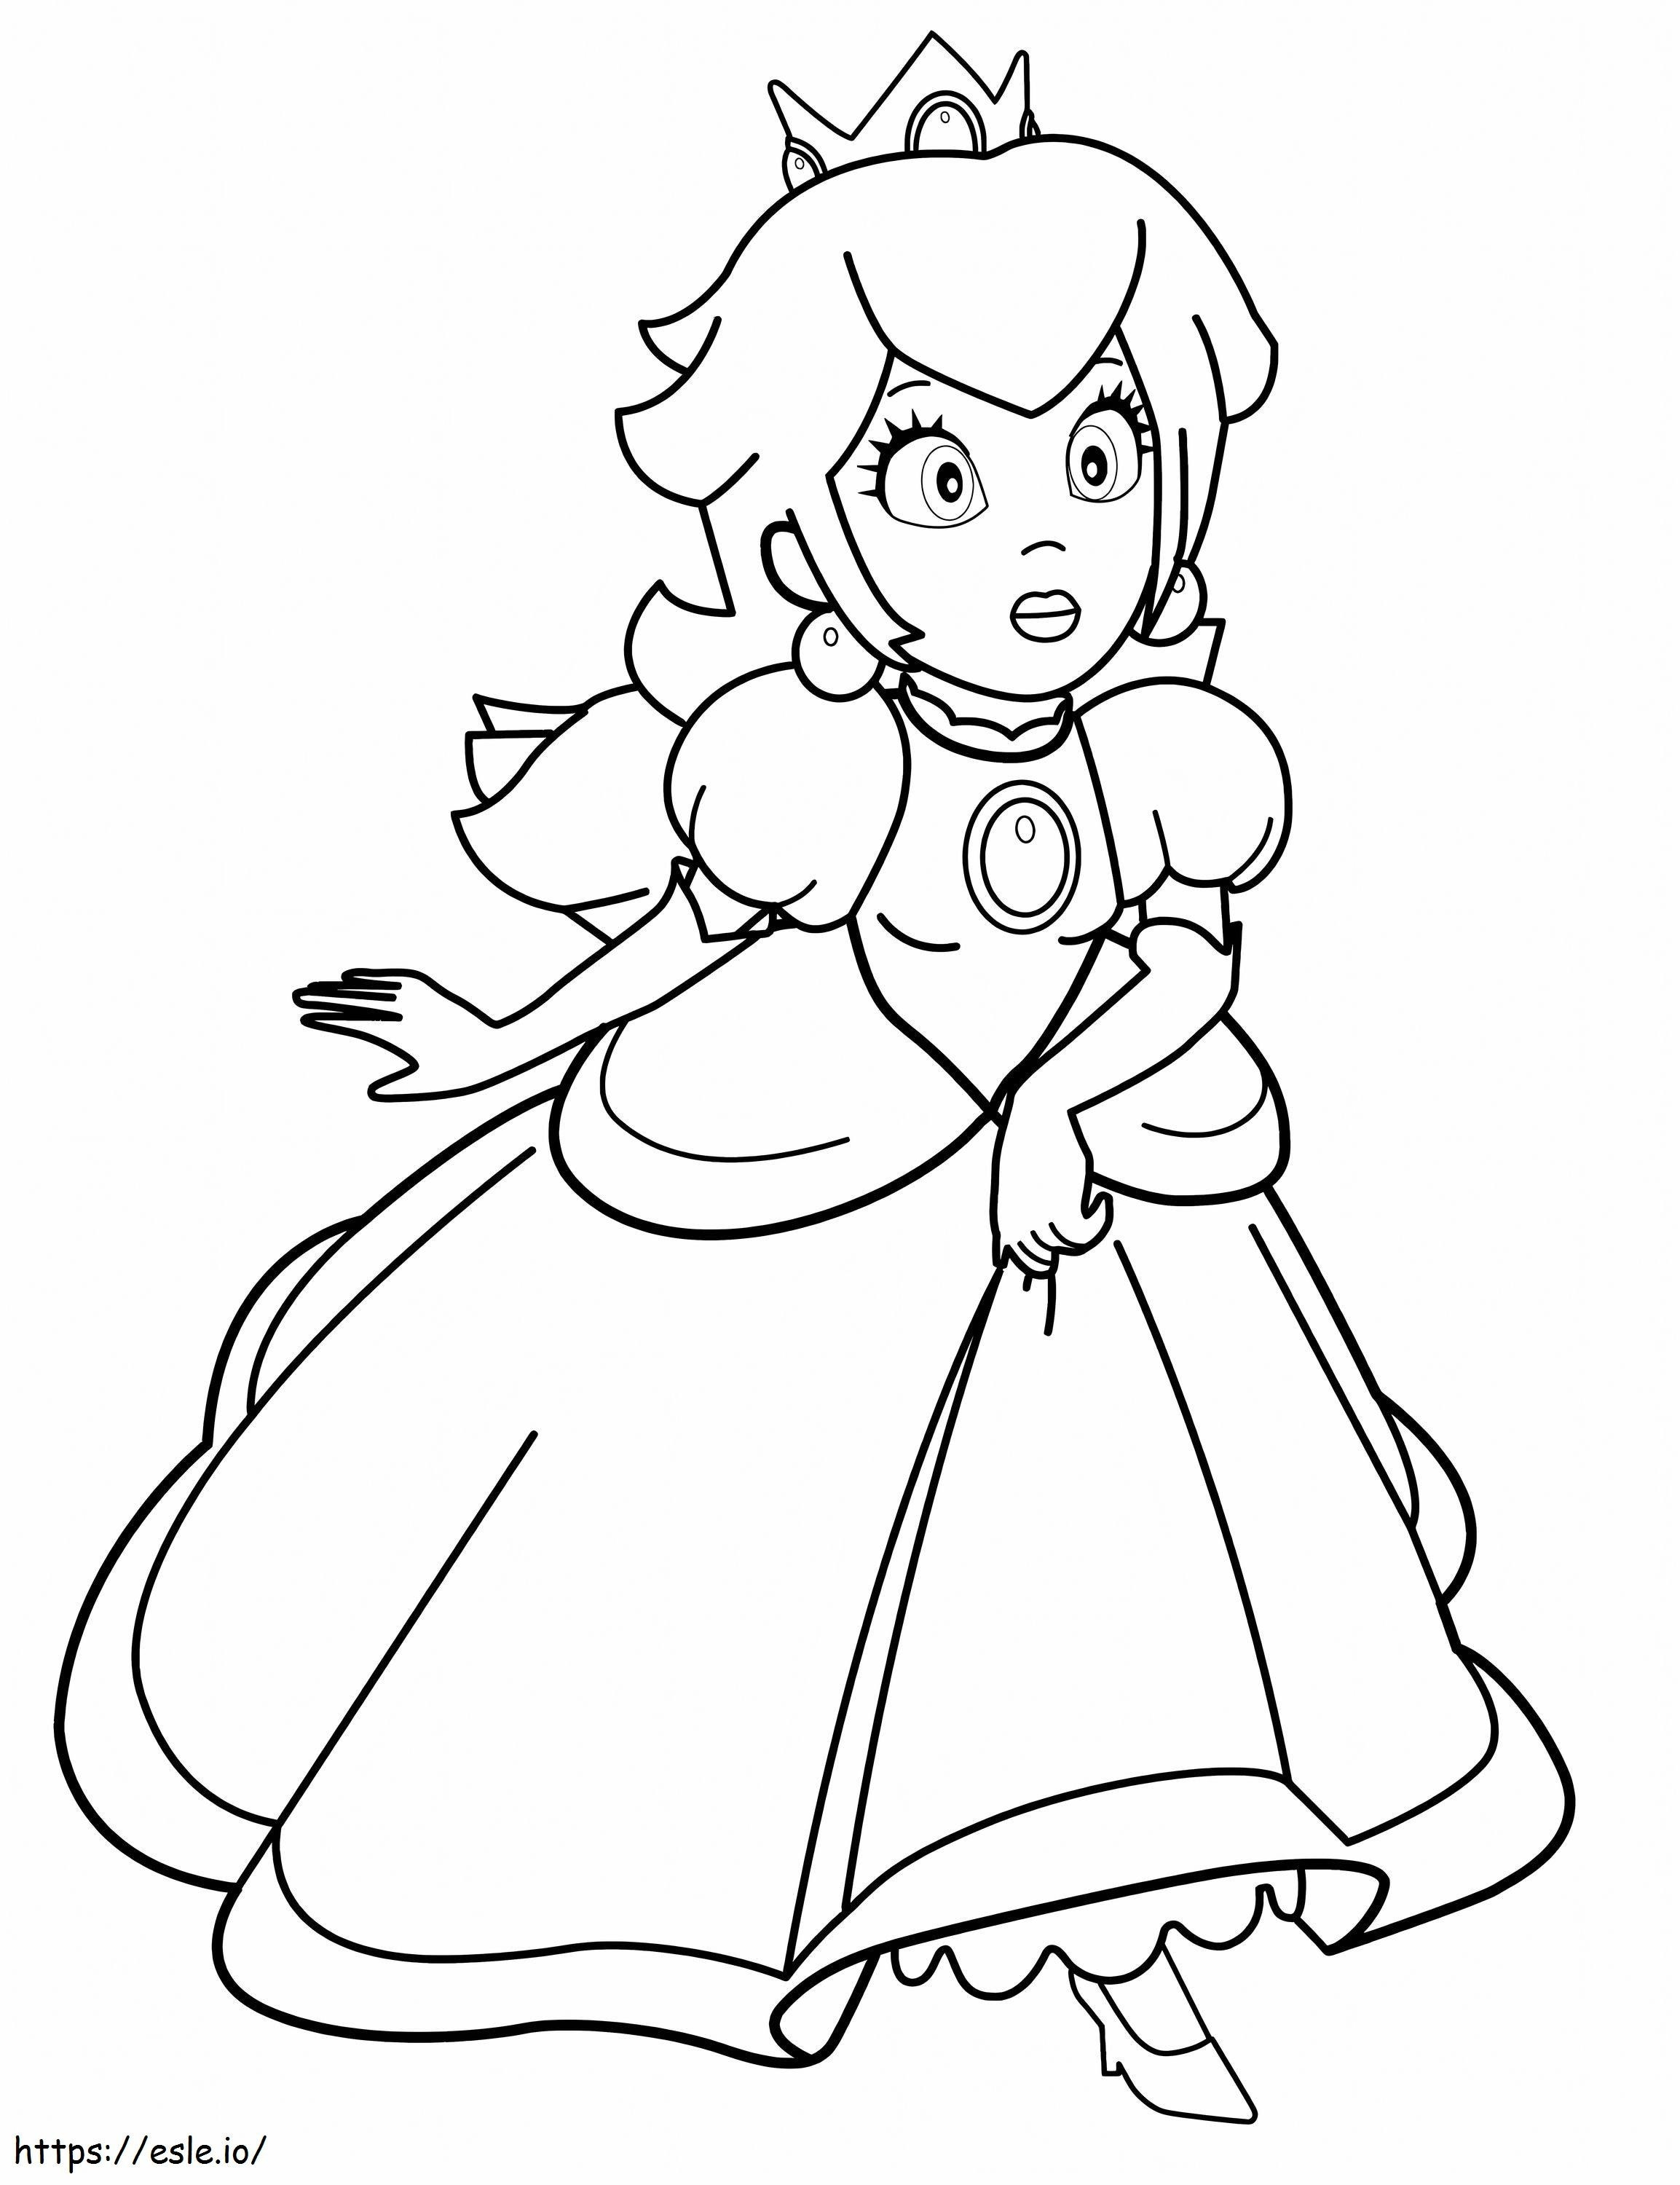 Princesa Peach Perfeita para colorir